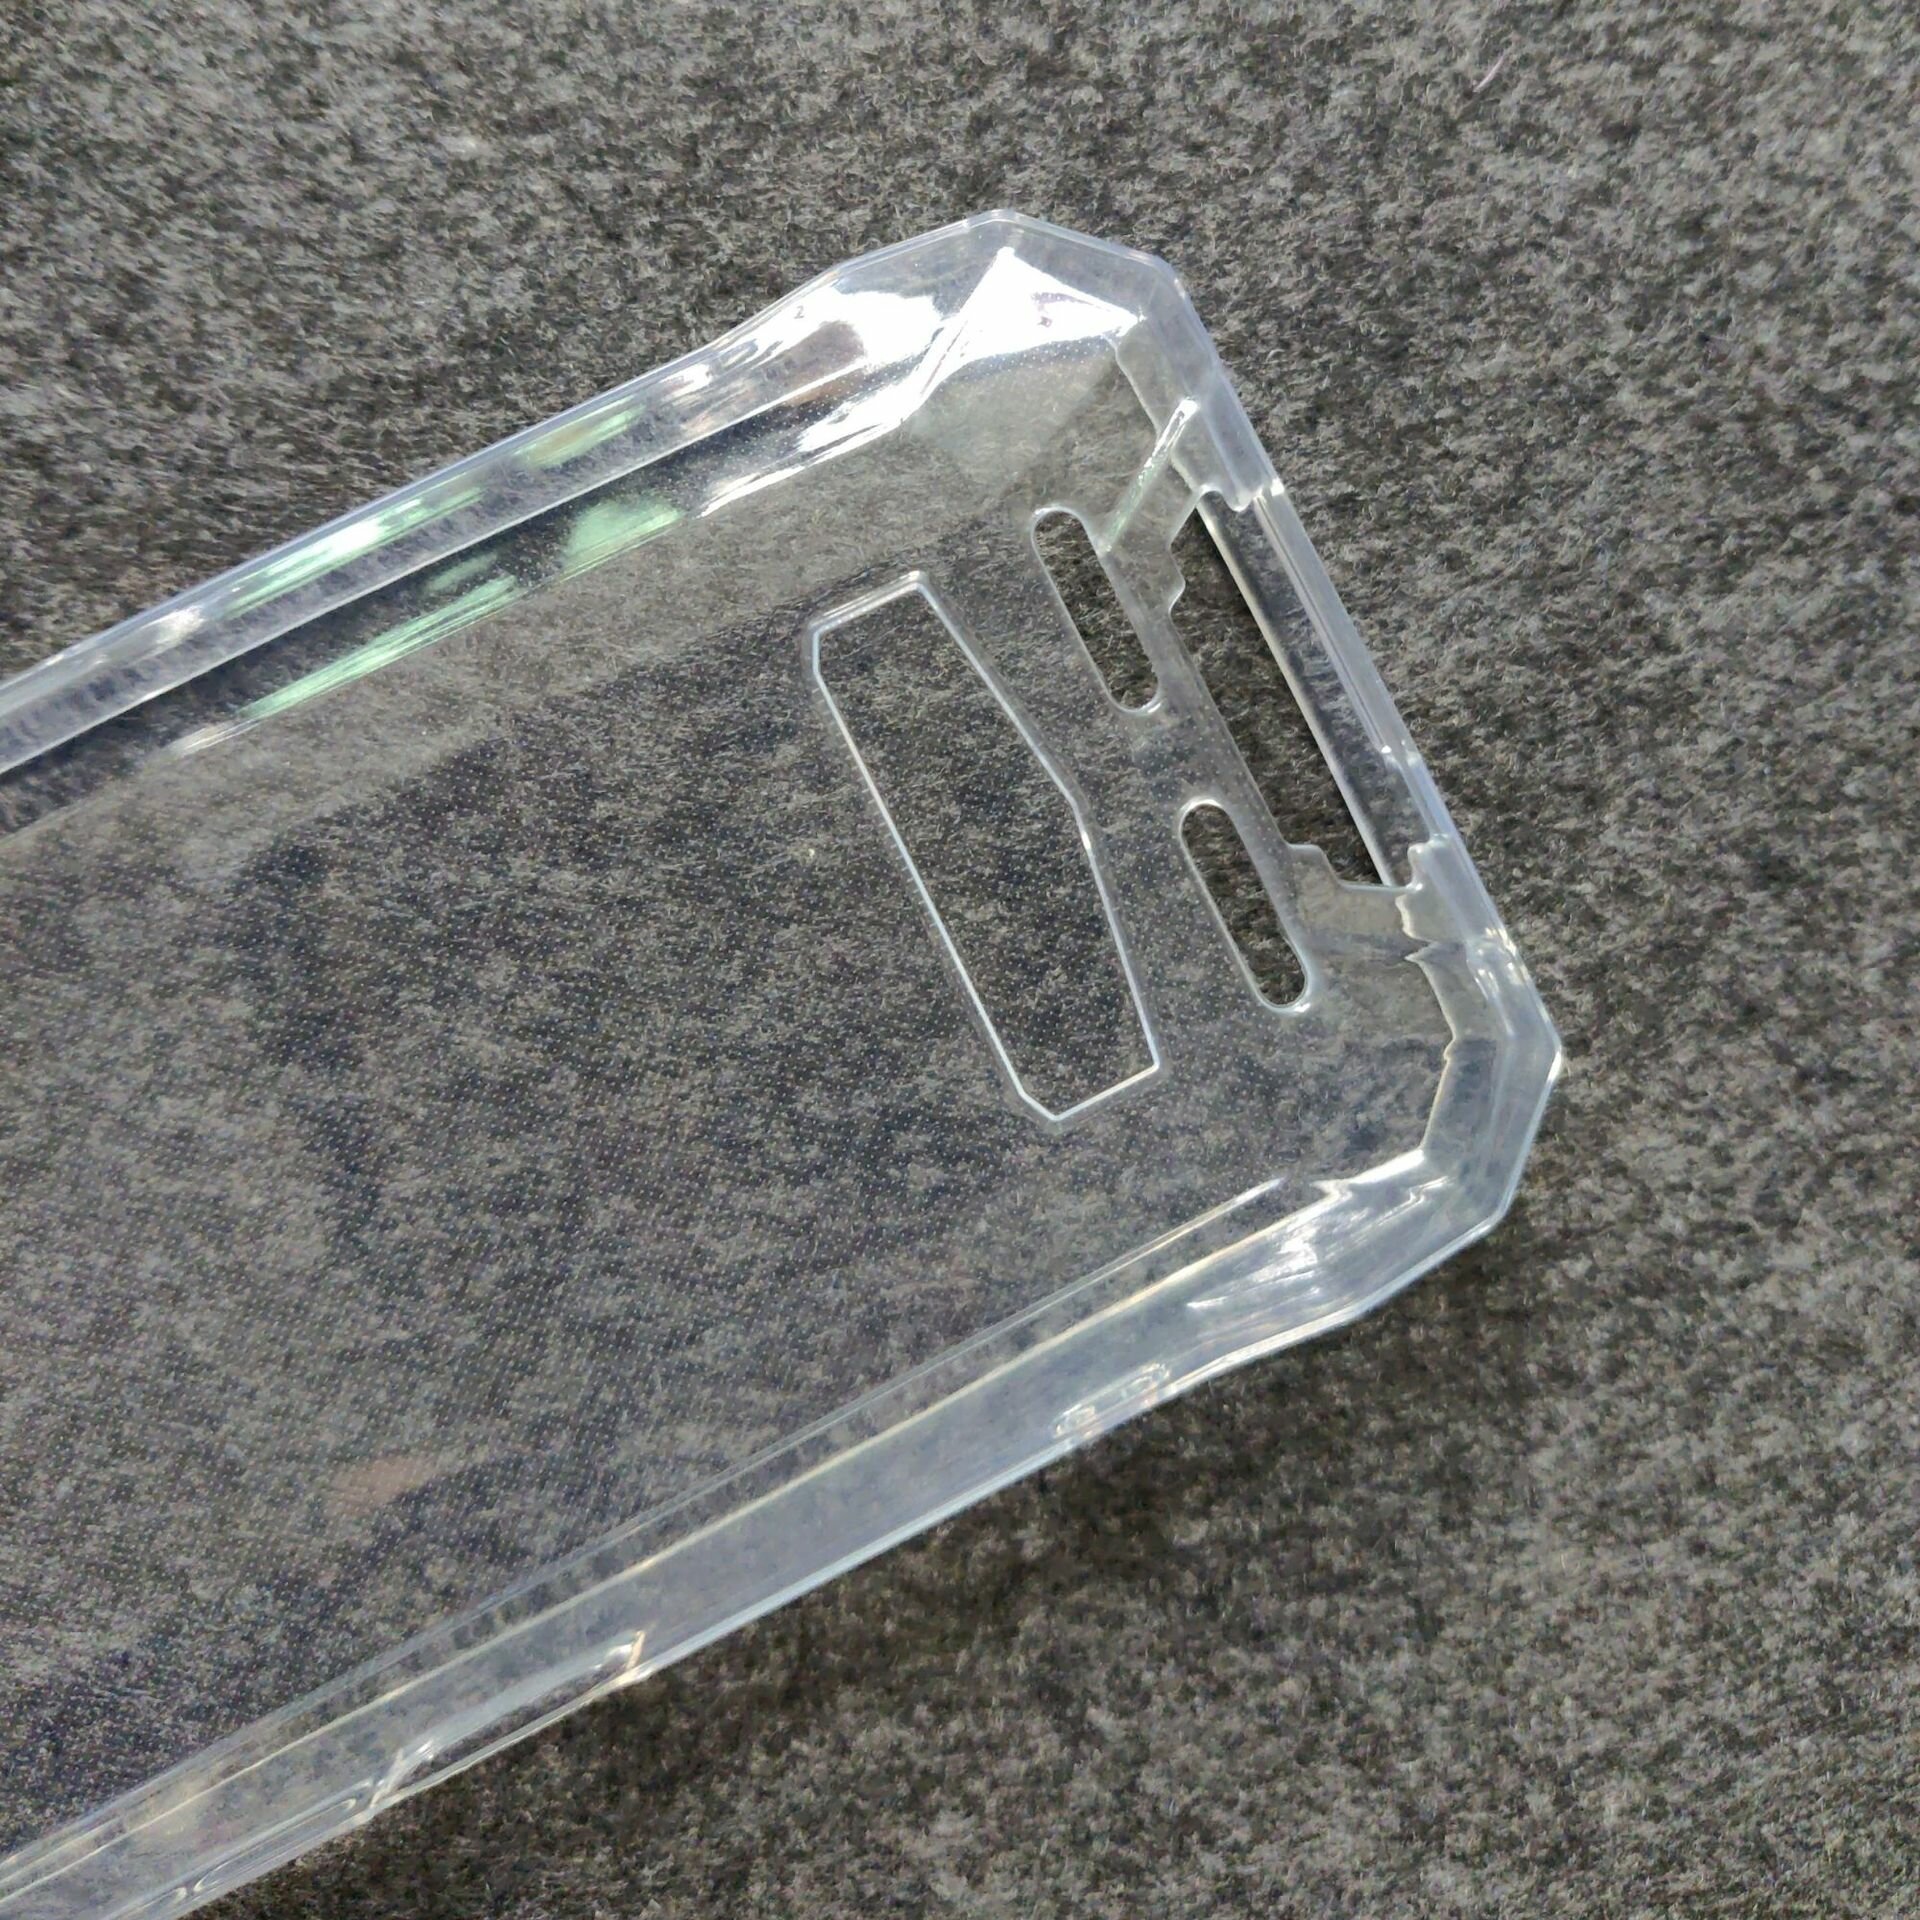 Чехол-бампер MyPads Tocco для Doogee S89 / S89 Pro ультра-тонкий из мягкого качественного силикона прозрачный